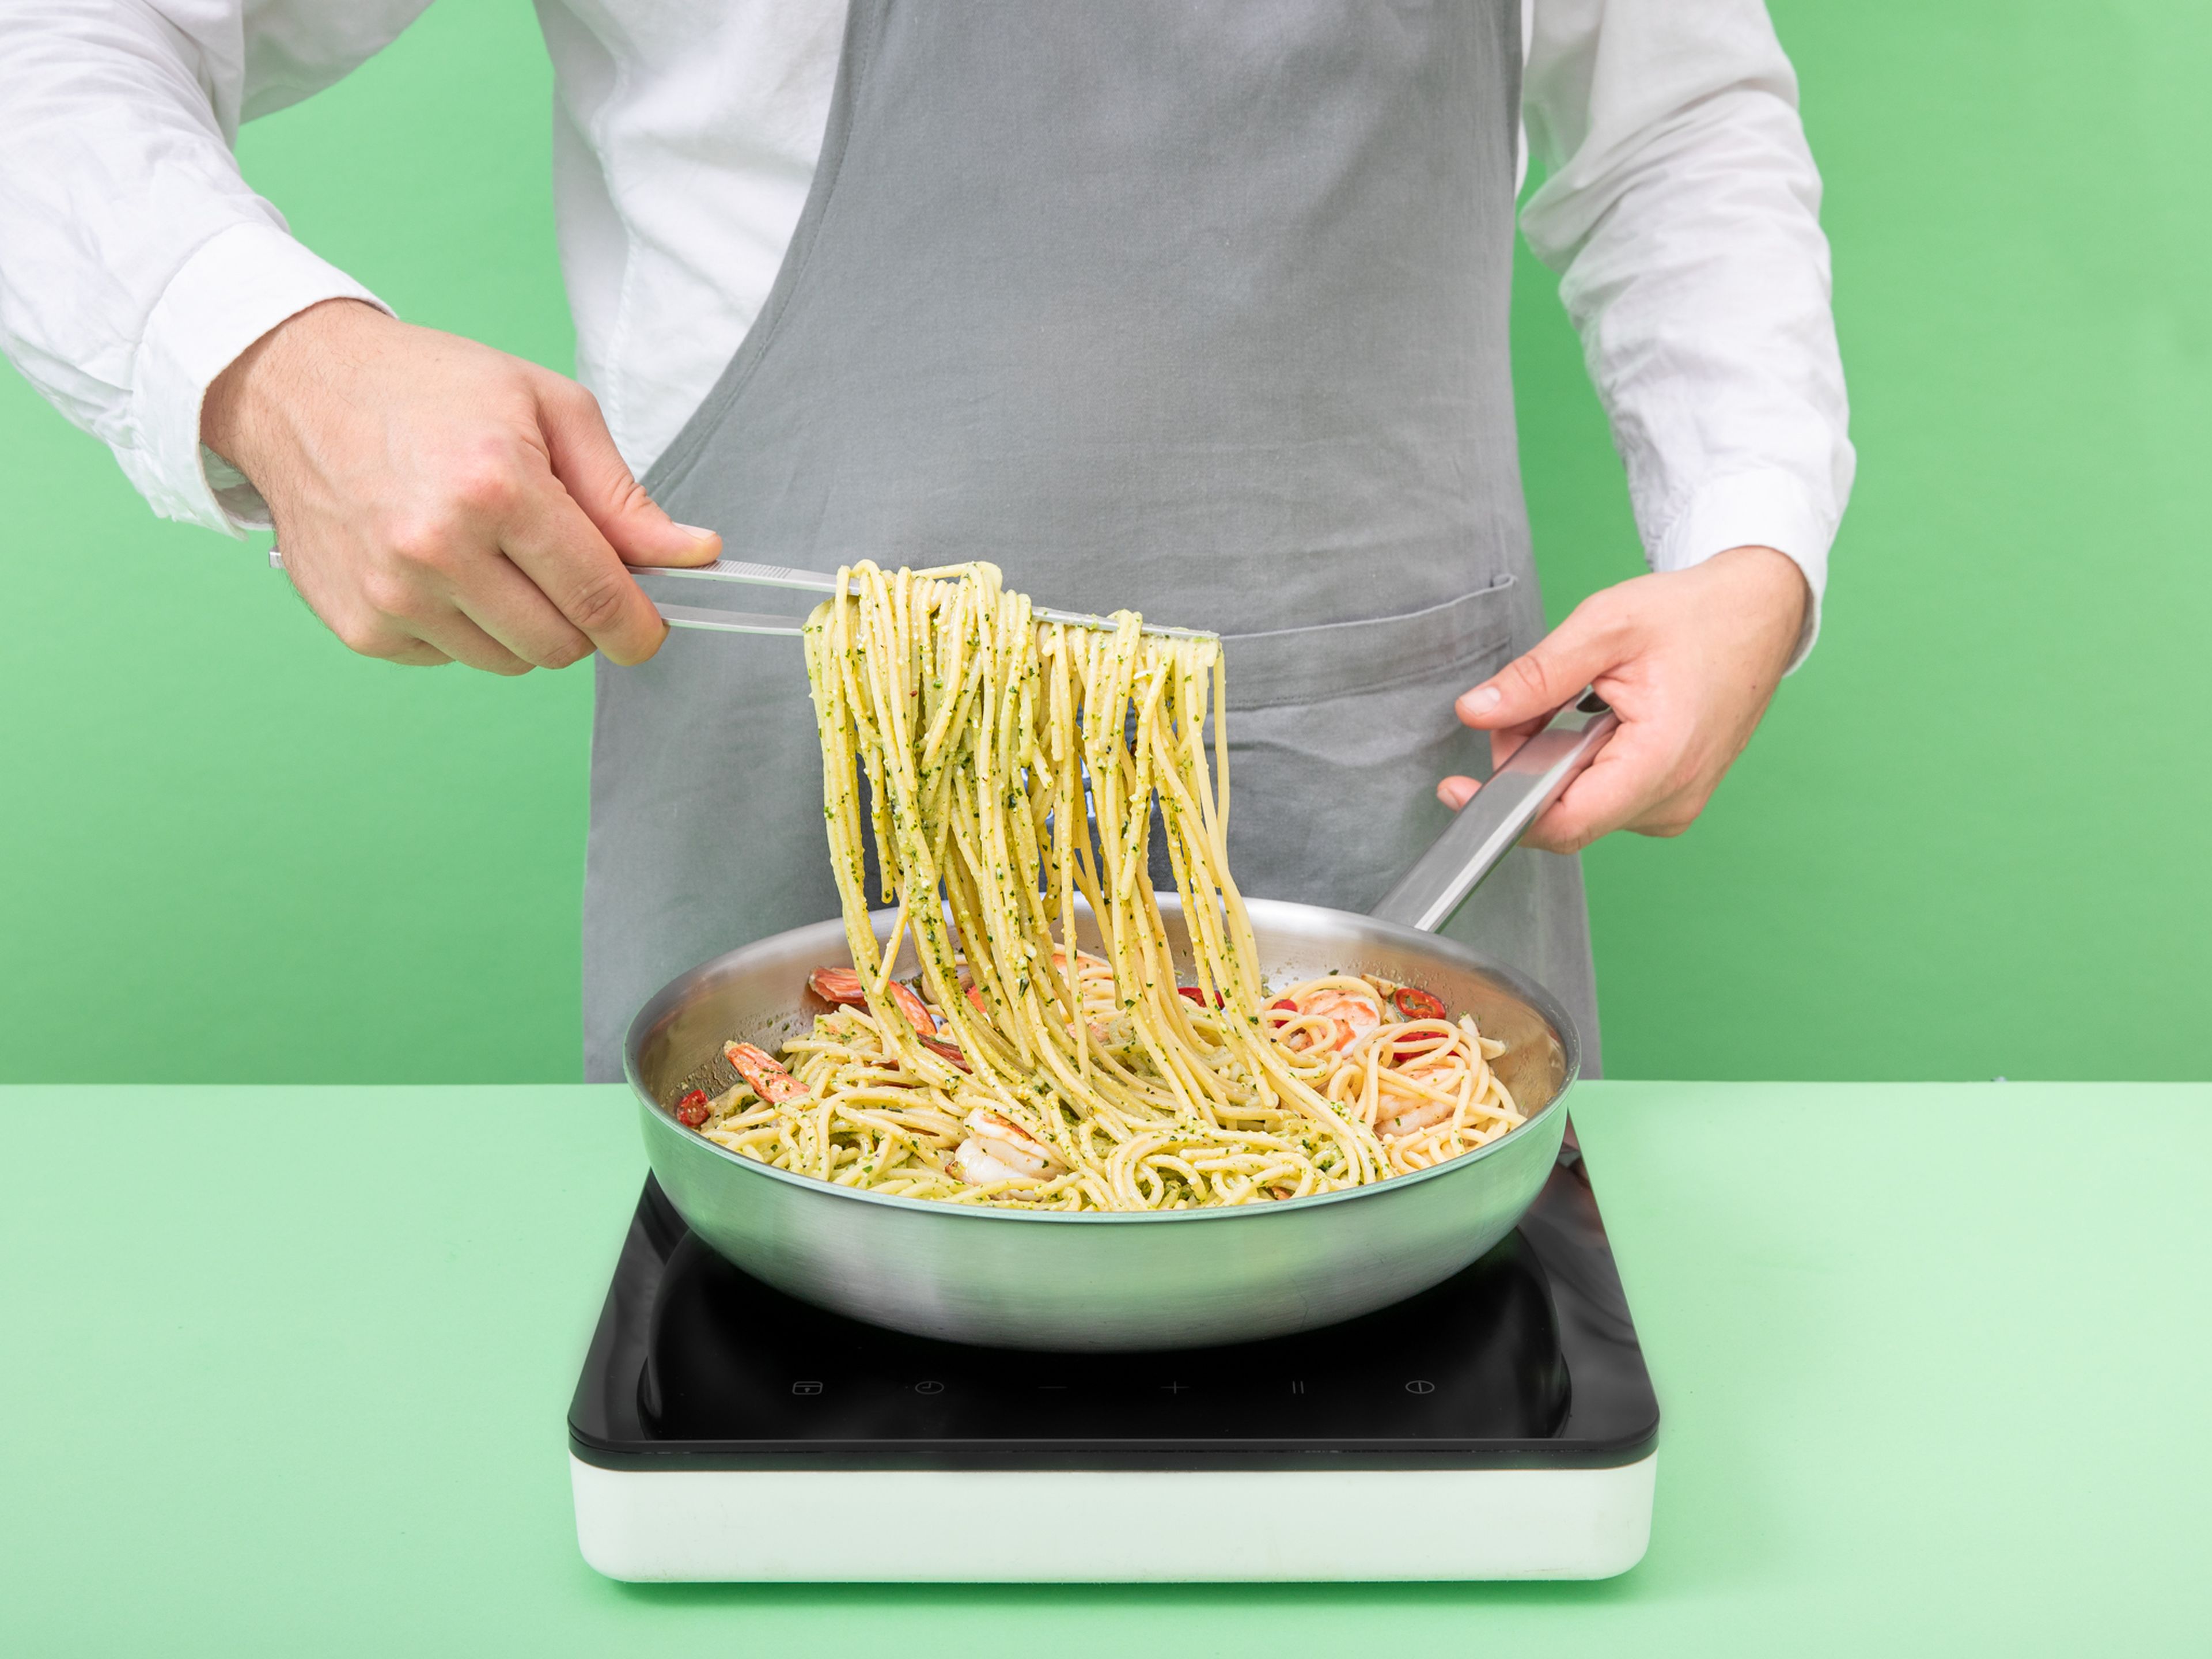 Gekochte Spaghetti und Pesto vermischen. Dabei Nudelwasser hinzufügen, bis eine cremige Konsistenz entsteht. Pasta auf Teller aufteilen. Mit Riesengarnelen, Ofentomaten und etwas frischen Rucola servieren. Guten Appetit!